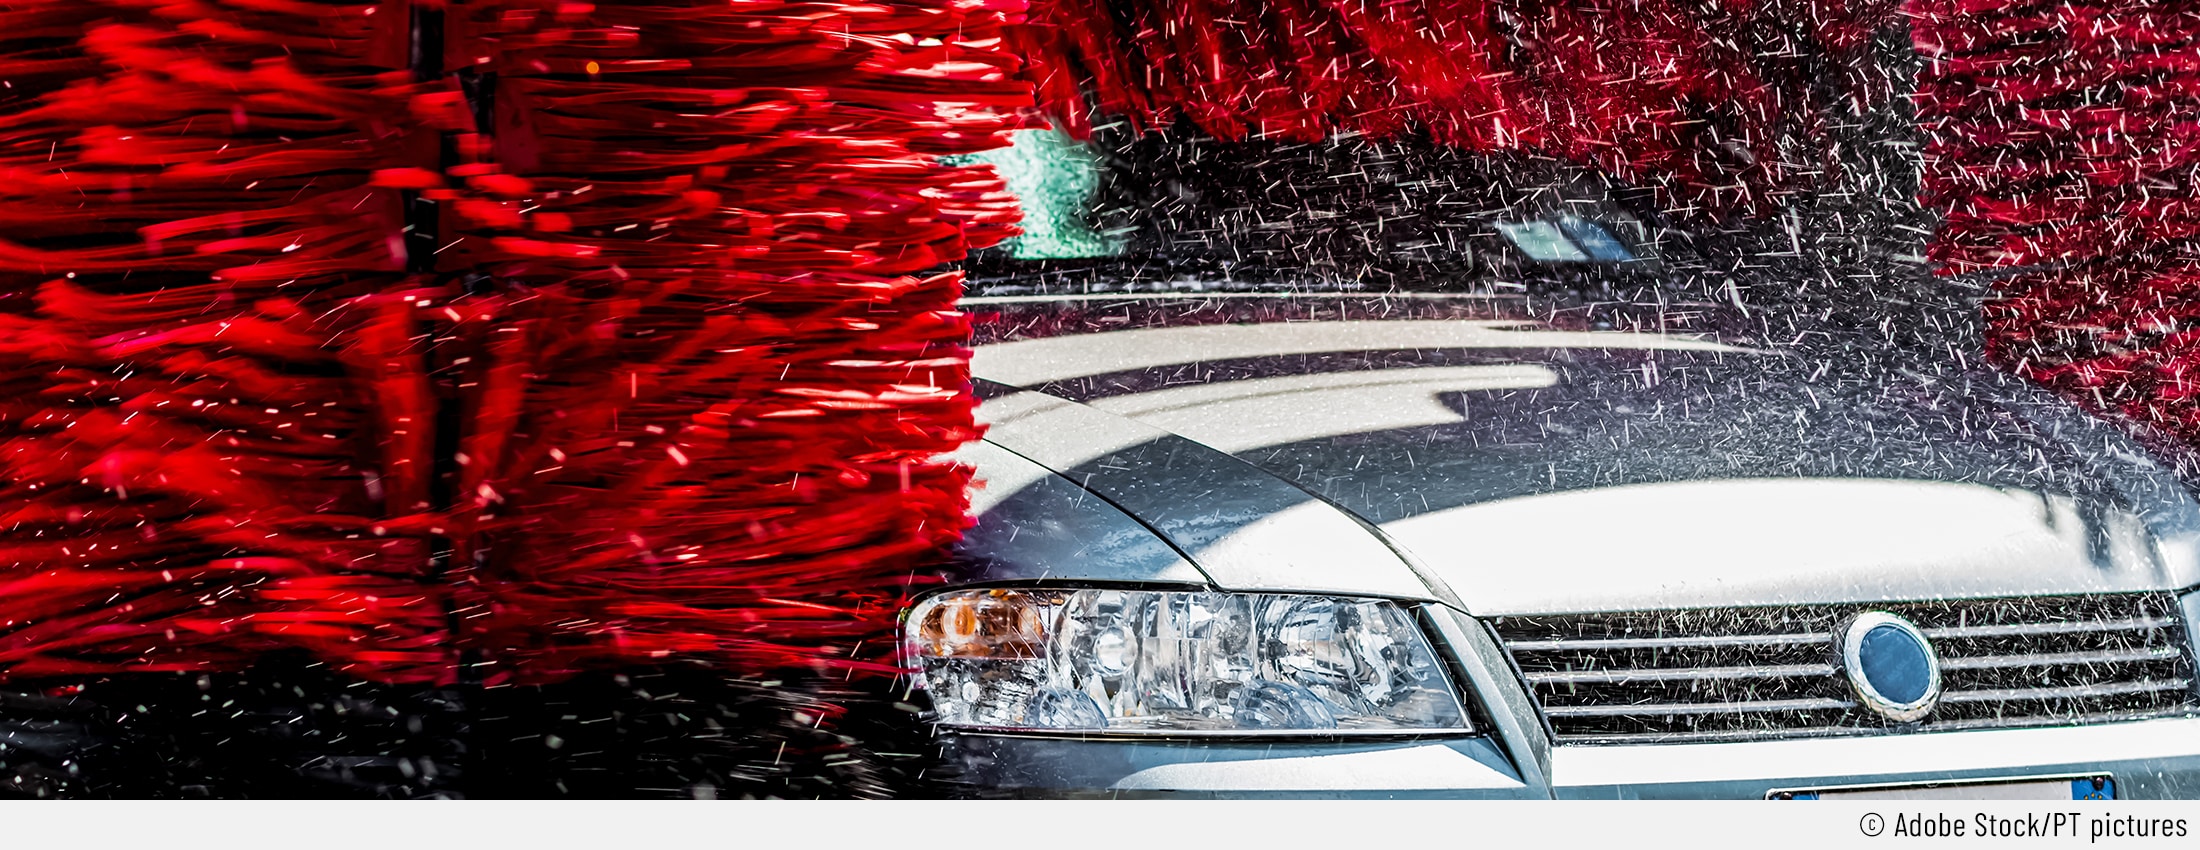 Auf dem Bild ist ein silbernes Auto von vorne zu sehen, das gerade durch eine automatische Waschanlage fährt. Die roten Waschbürsten der Waschanlage können Kratzer verursachen.